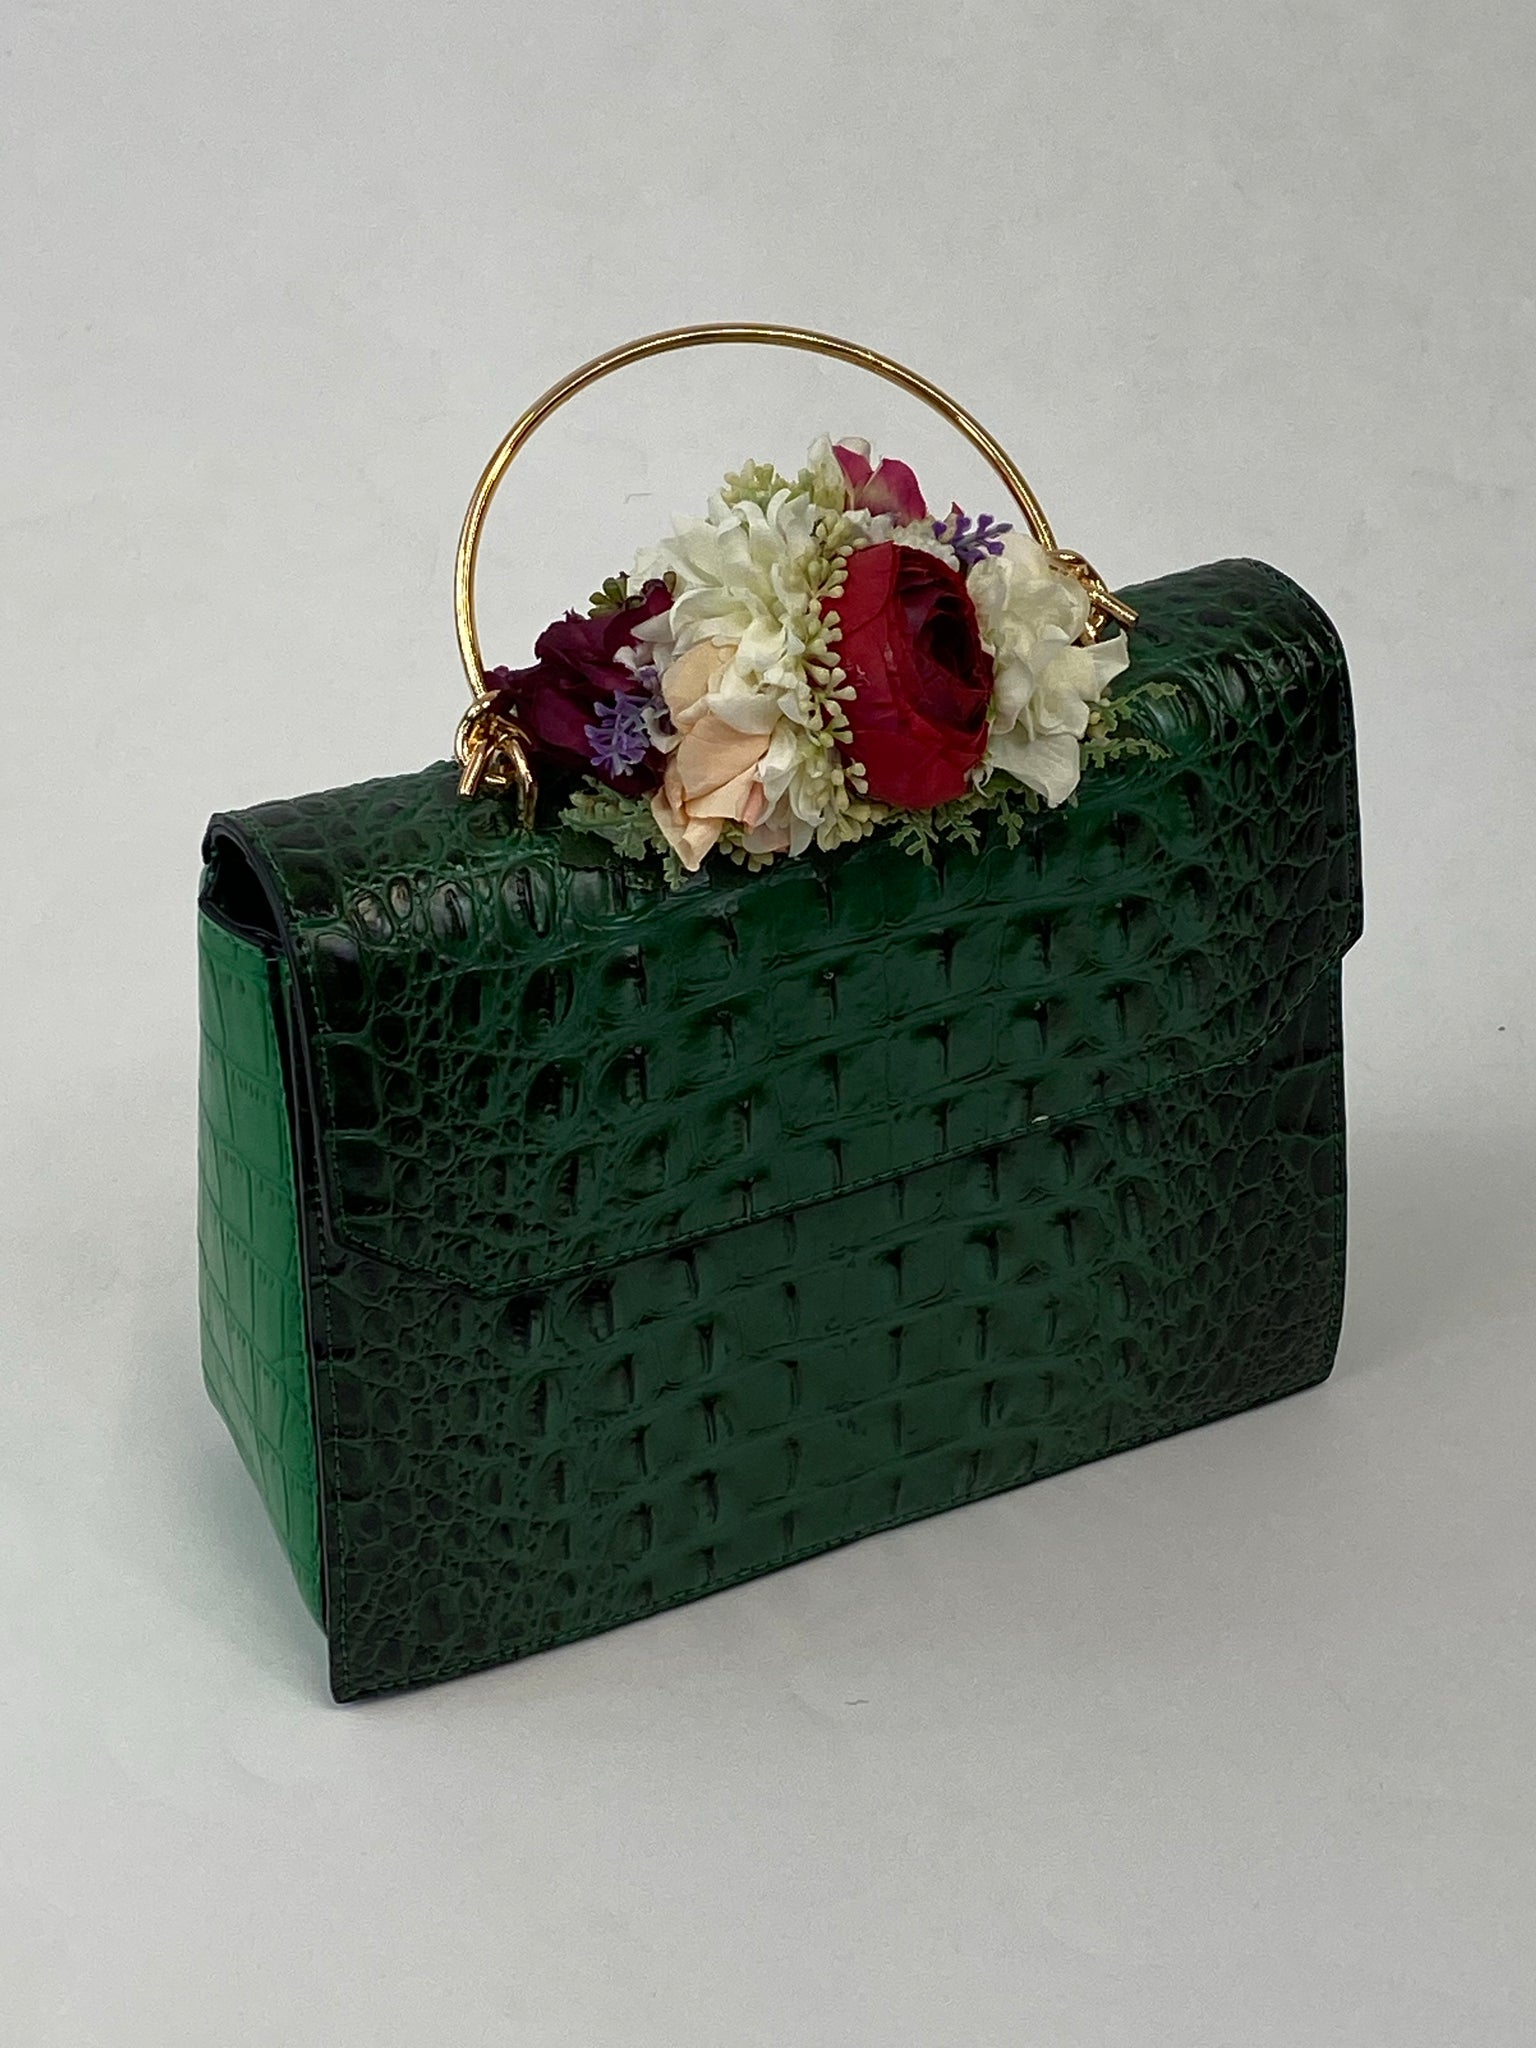 Classic Clara Handbag in Vintage Green - Handmade Vintage Inspired